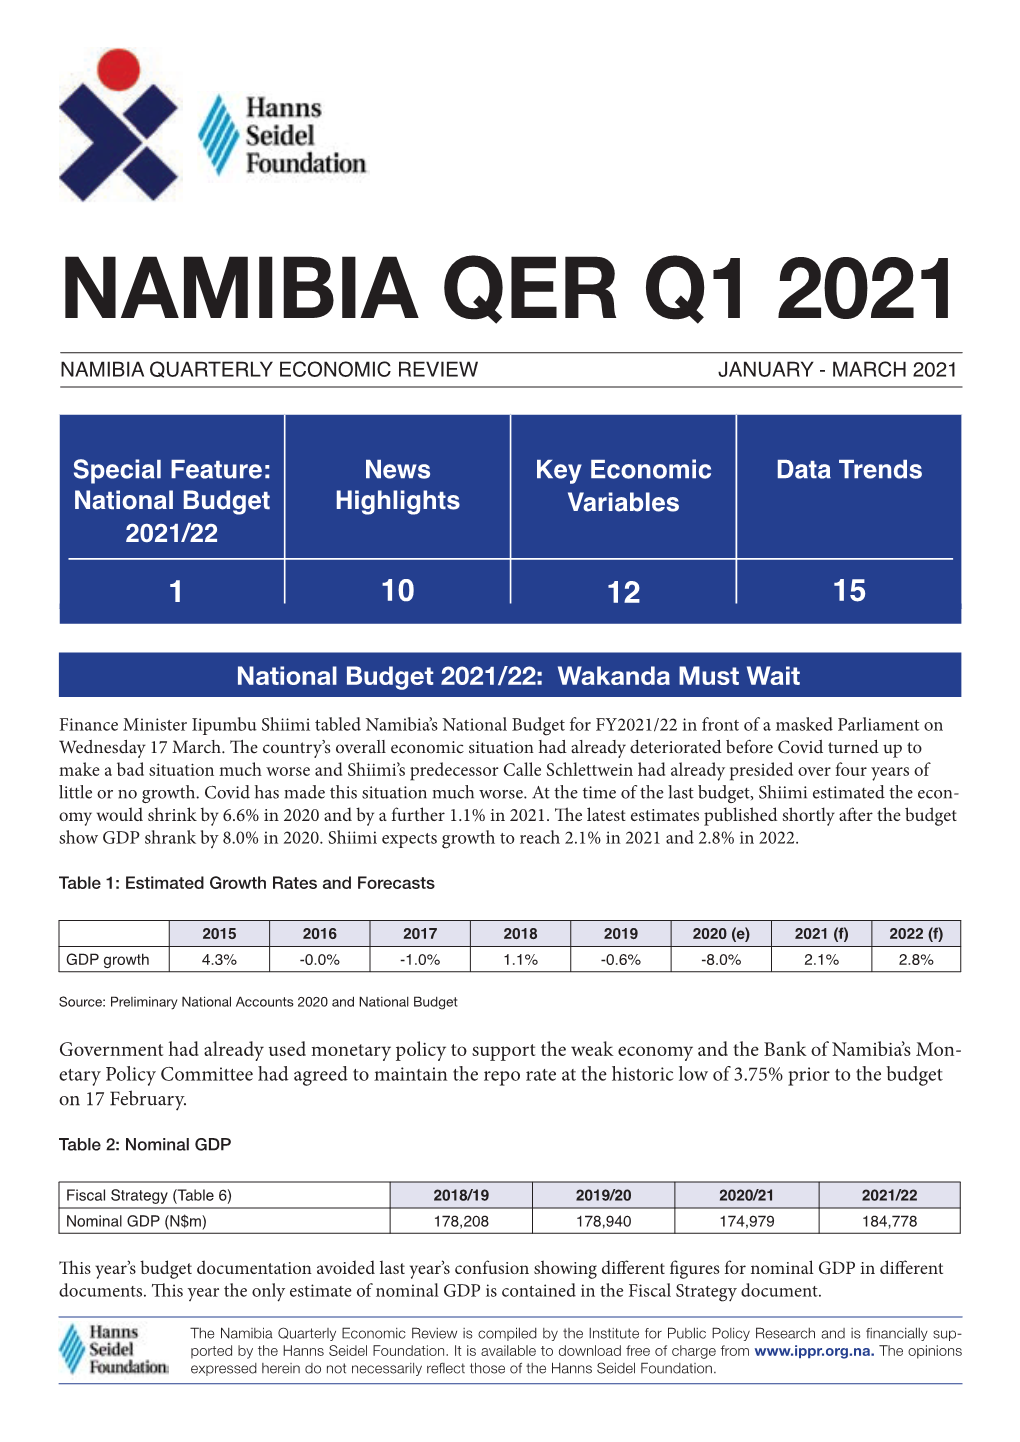 IPPR Namibia QER Q1 2021 Opt